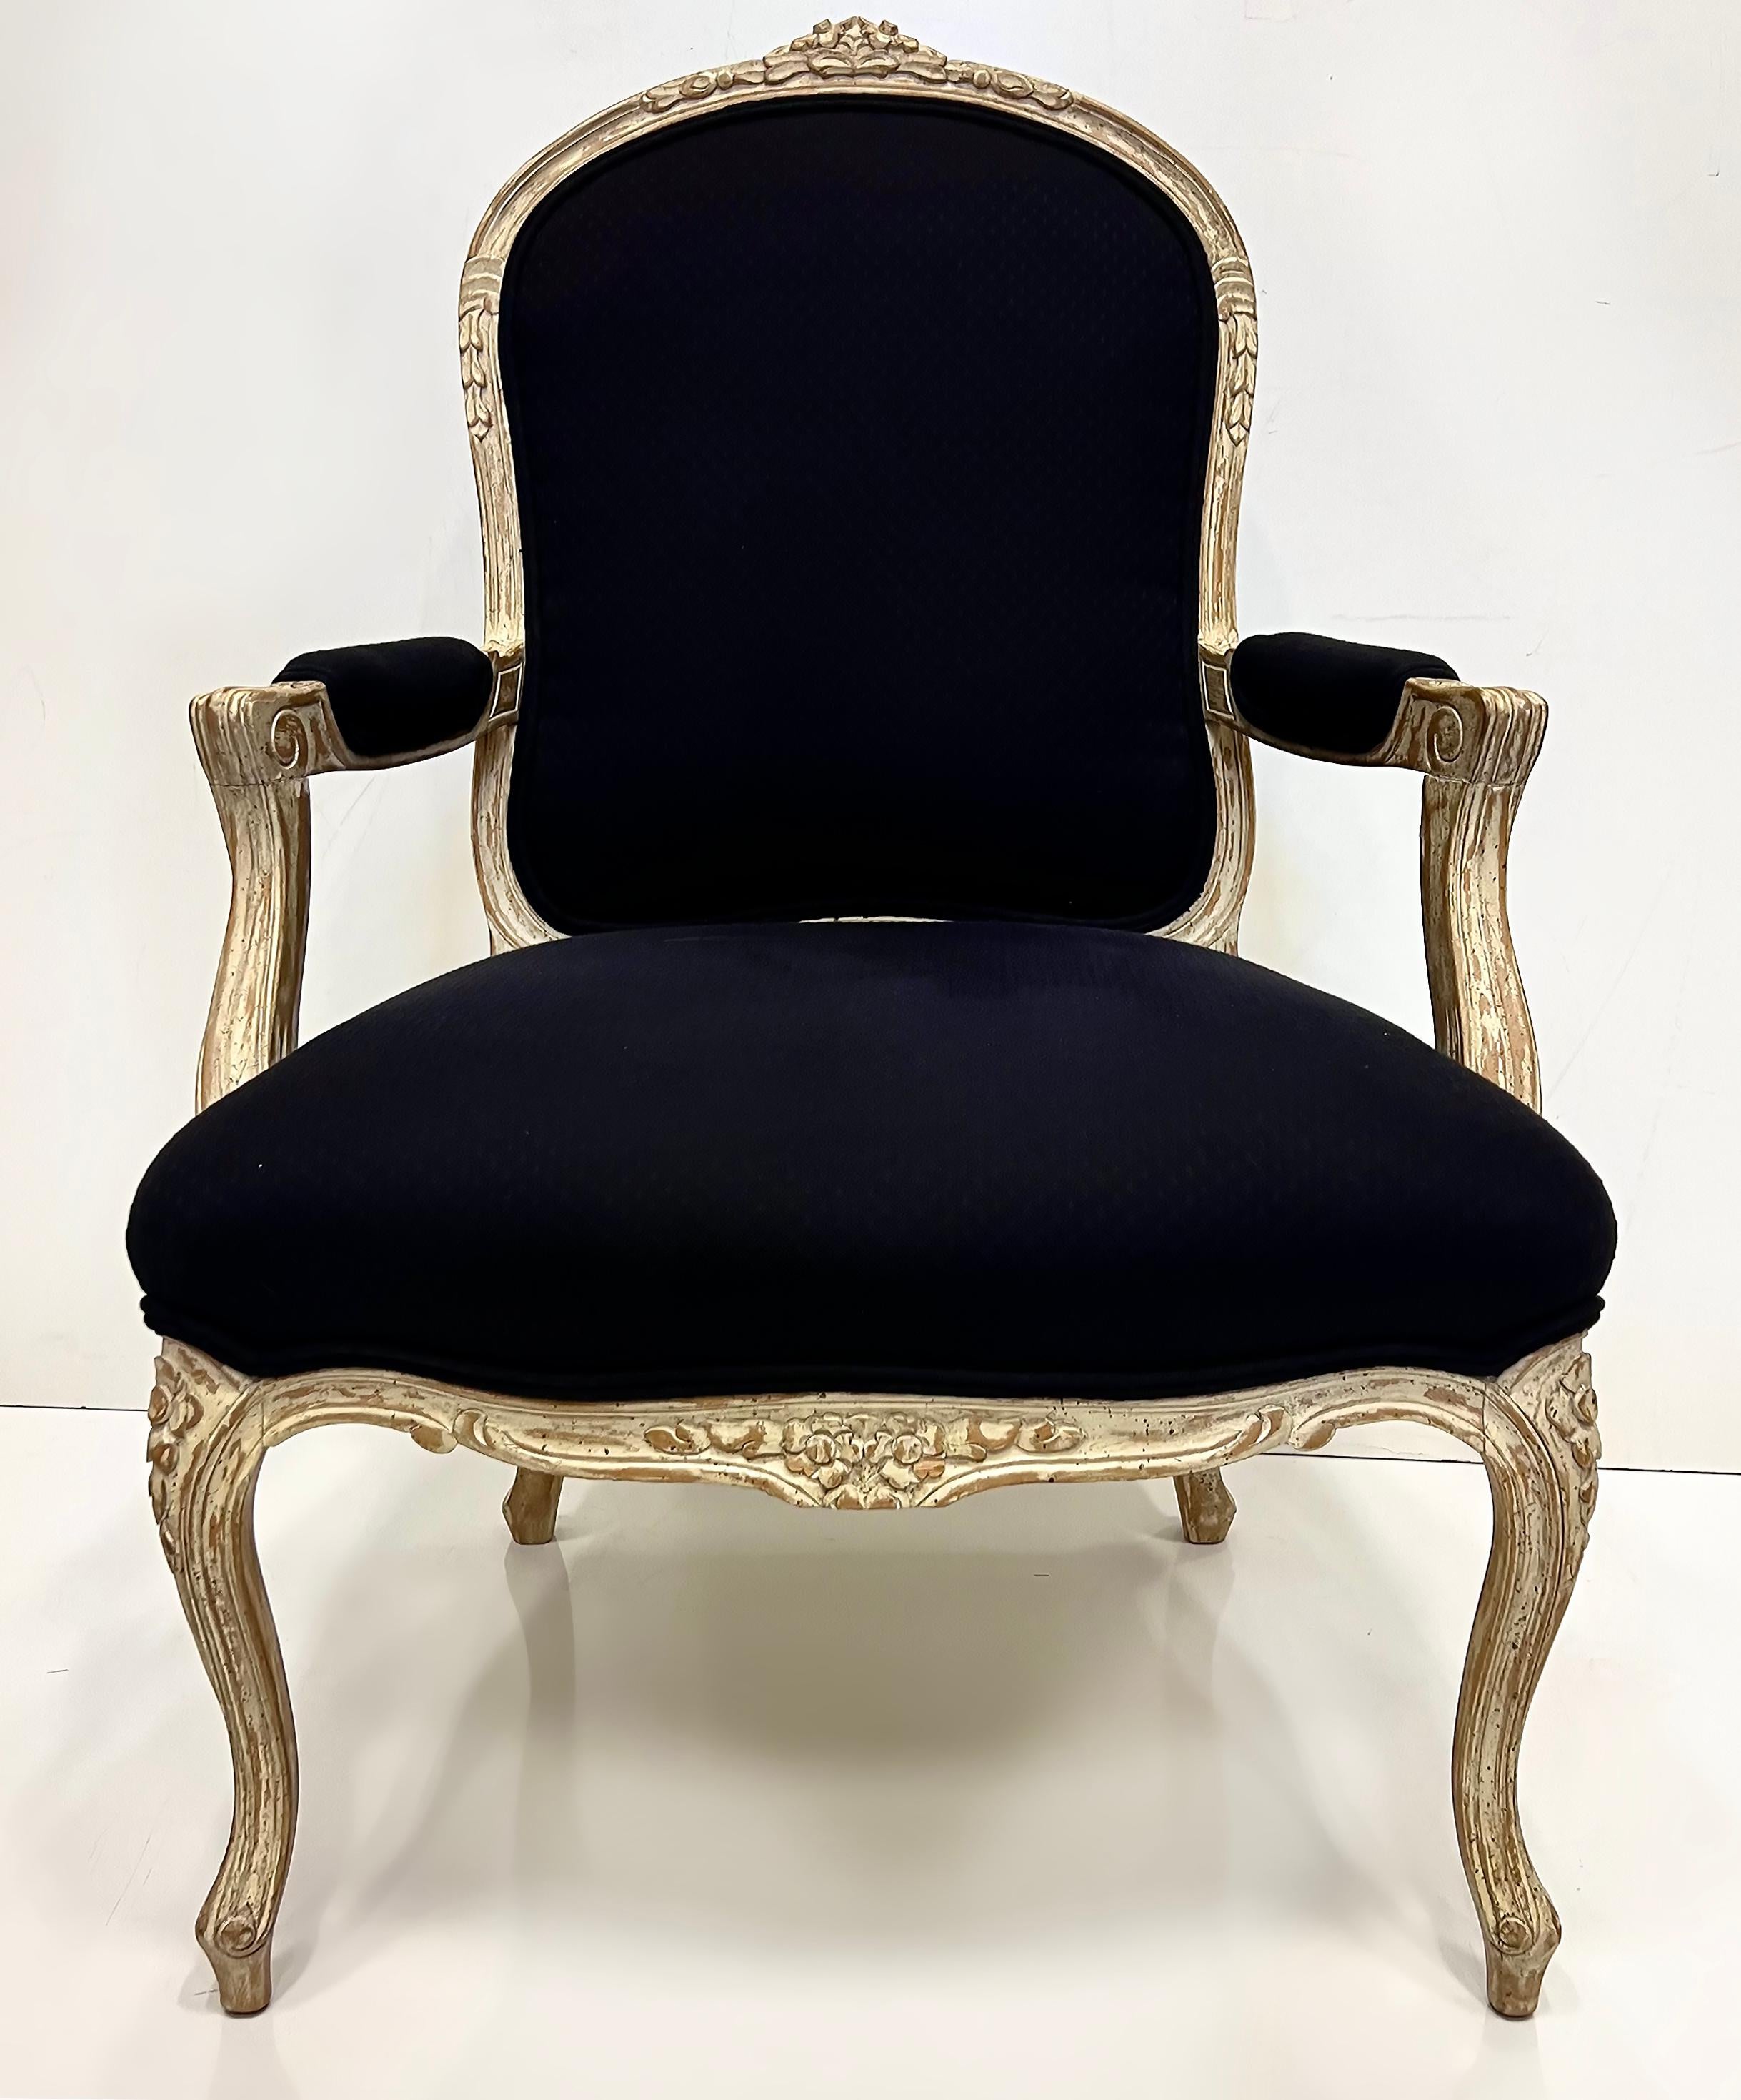 Erhebliche Vintage Louis XV Stil Fauteuil Stühle, große Skala Paar

Zum Verkauf angeboten werden zwei offene Fauteuil-Sessel im Stil Louis XV aus dem 20. Jahrhundert.  Die Stühle sind gut verarbeitet und haben einen großen Maßstab. Außerdem sind sie